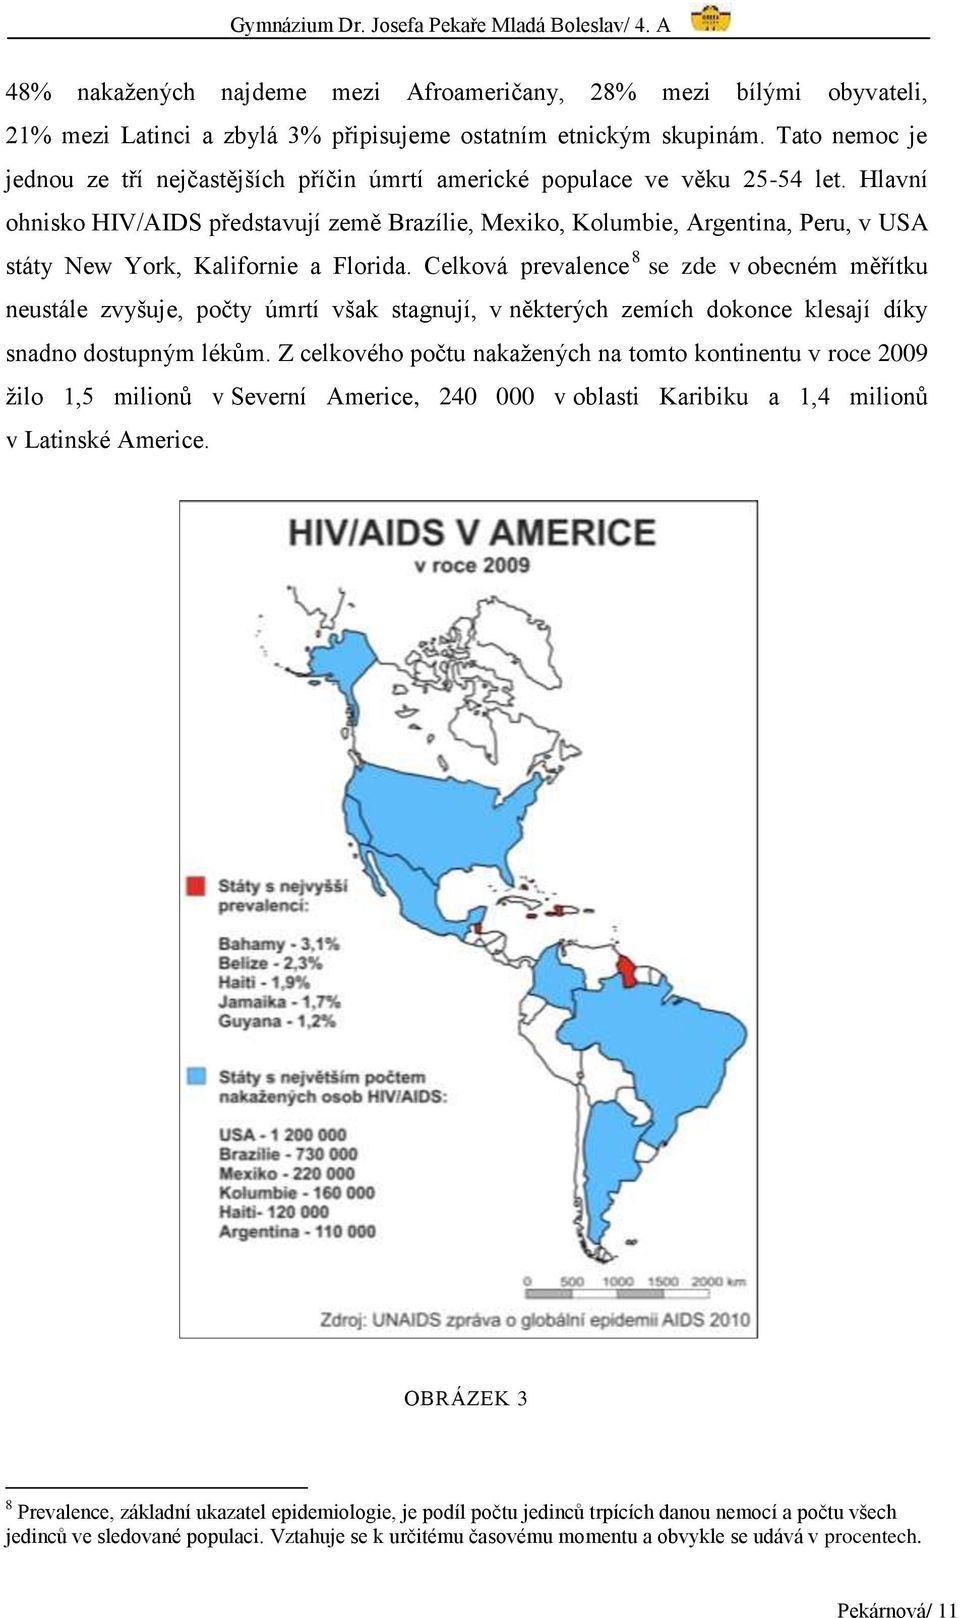 Hlavní ohnisko HIV/AIDS představují země Brazílie, Mexiko, Kolumbie, Argentina, Peru, v USA státy New York, Kalifornie a Florida.